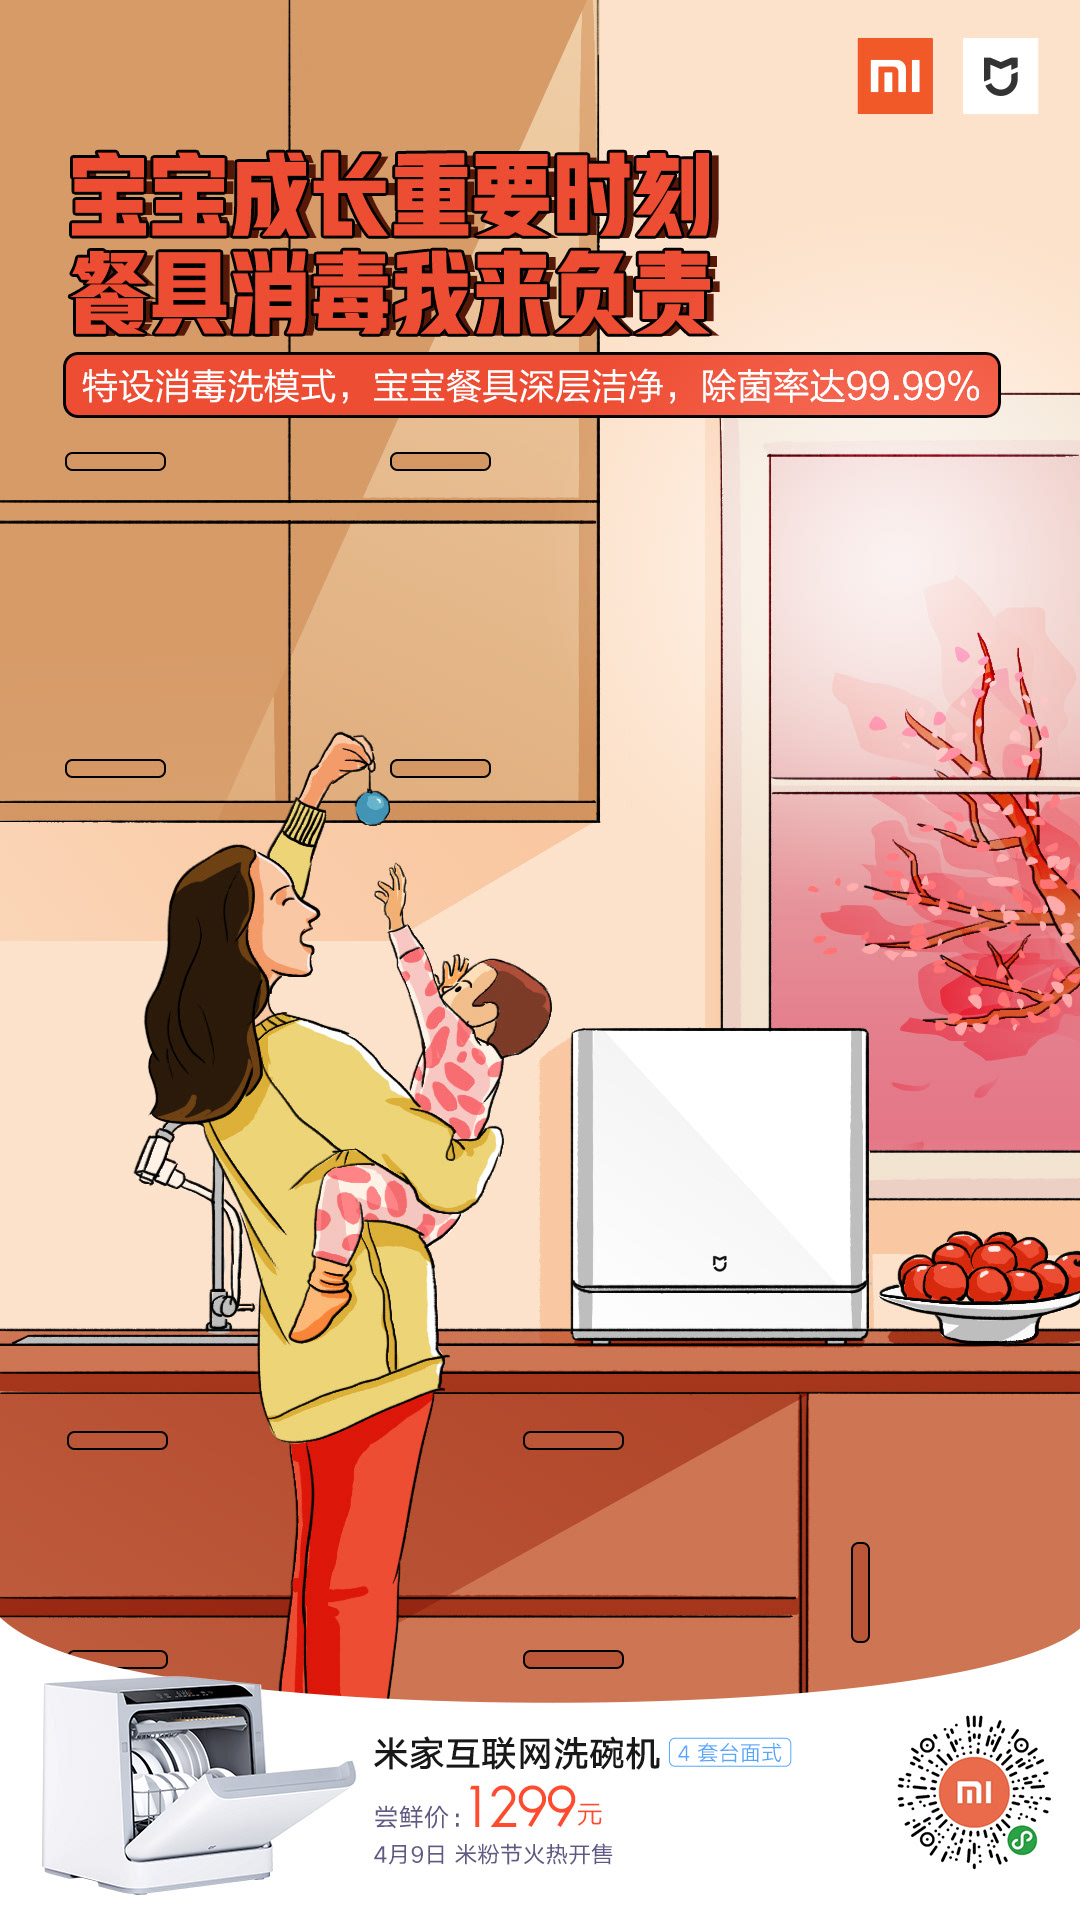 厨房电器 小米 小米之家 节日插画 节气插画